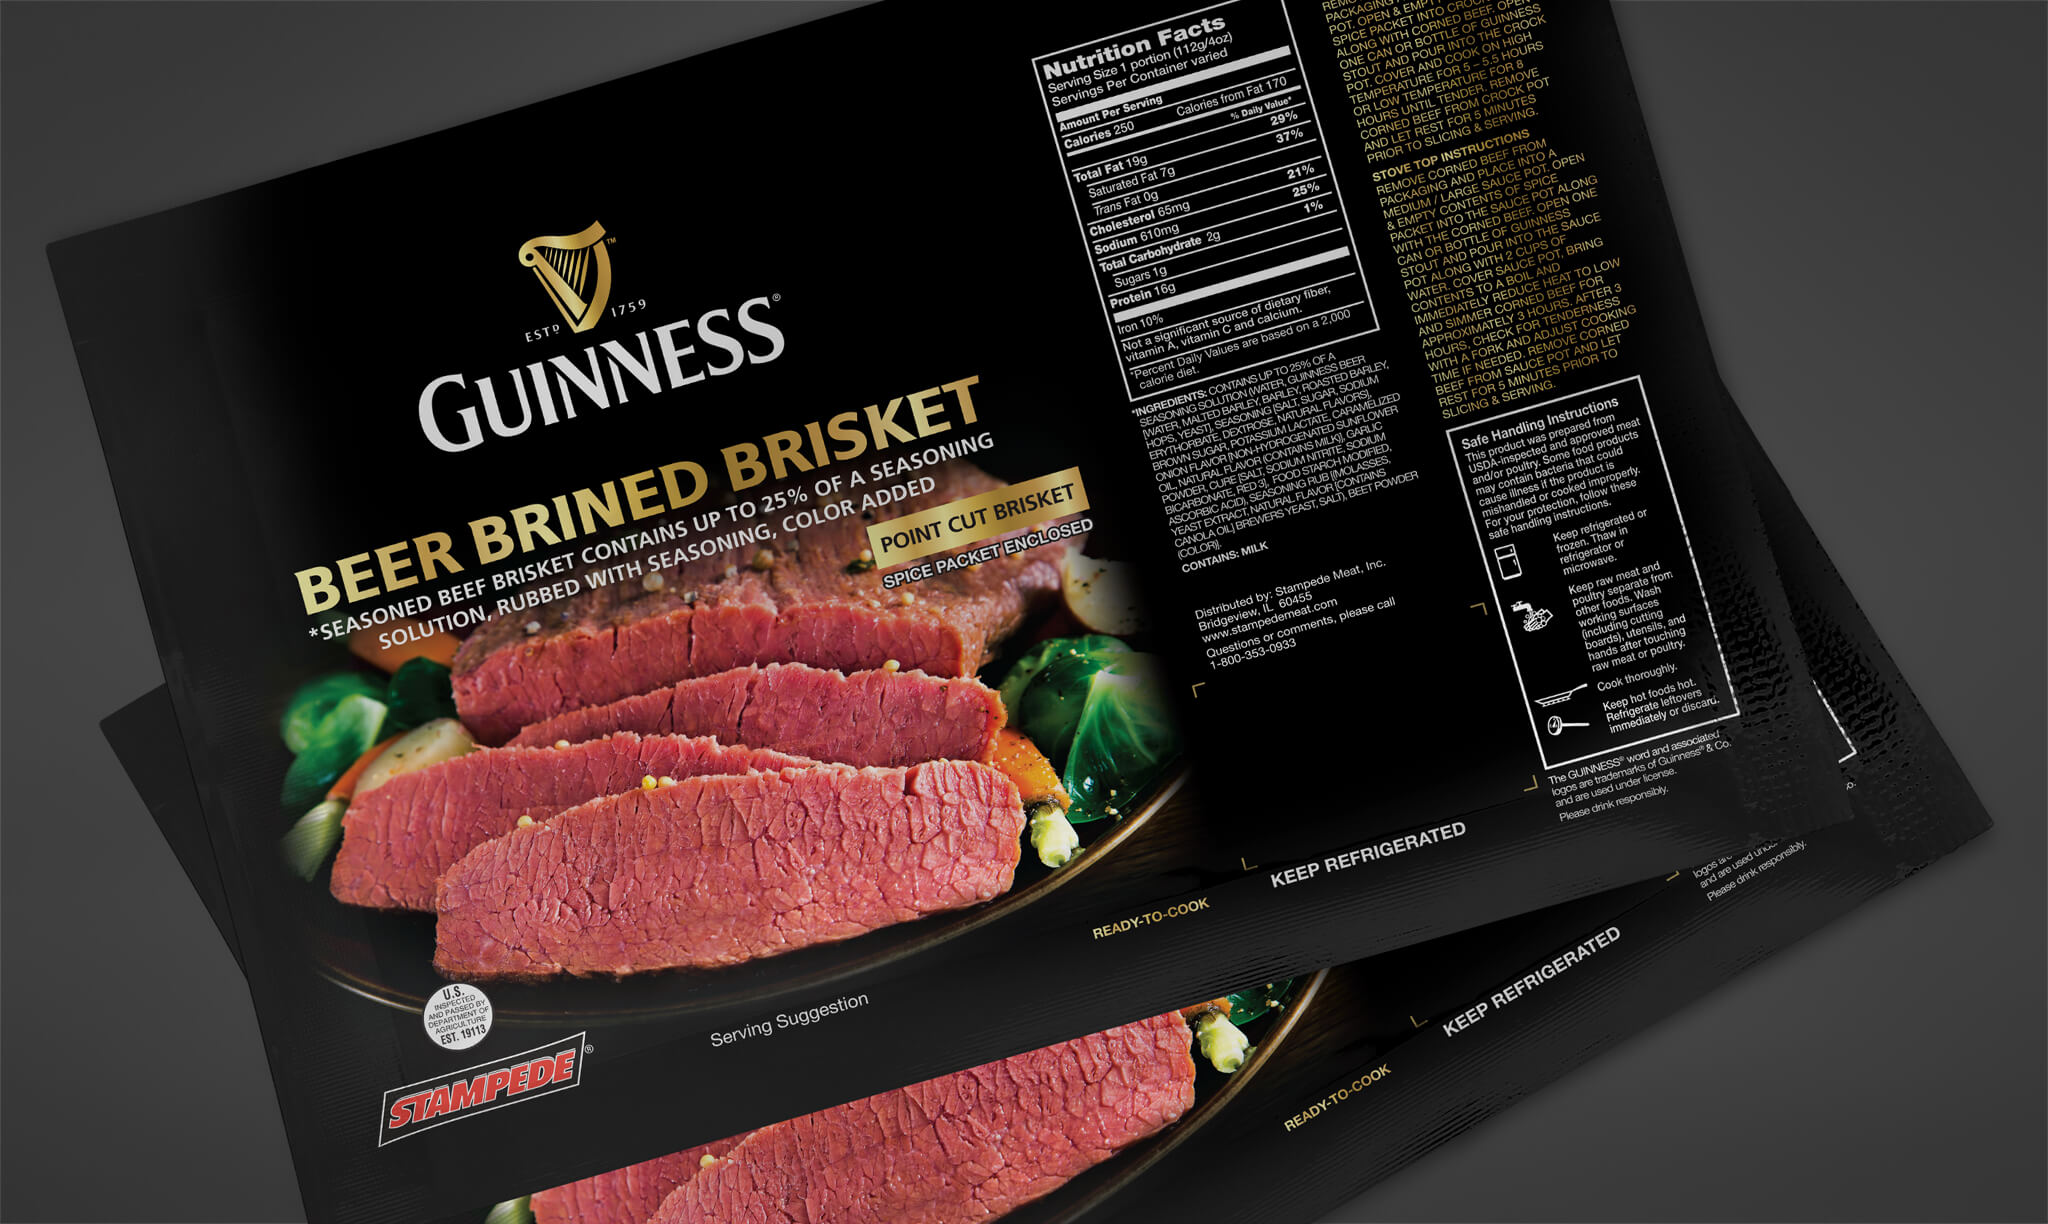 Guinness Beer Brined Brisket Packaging